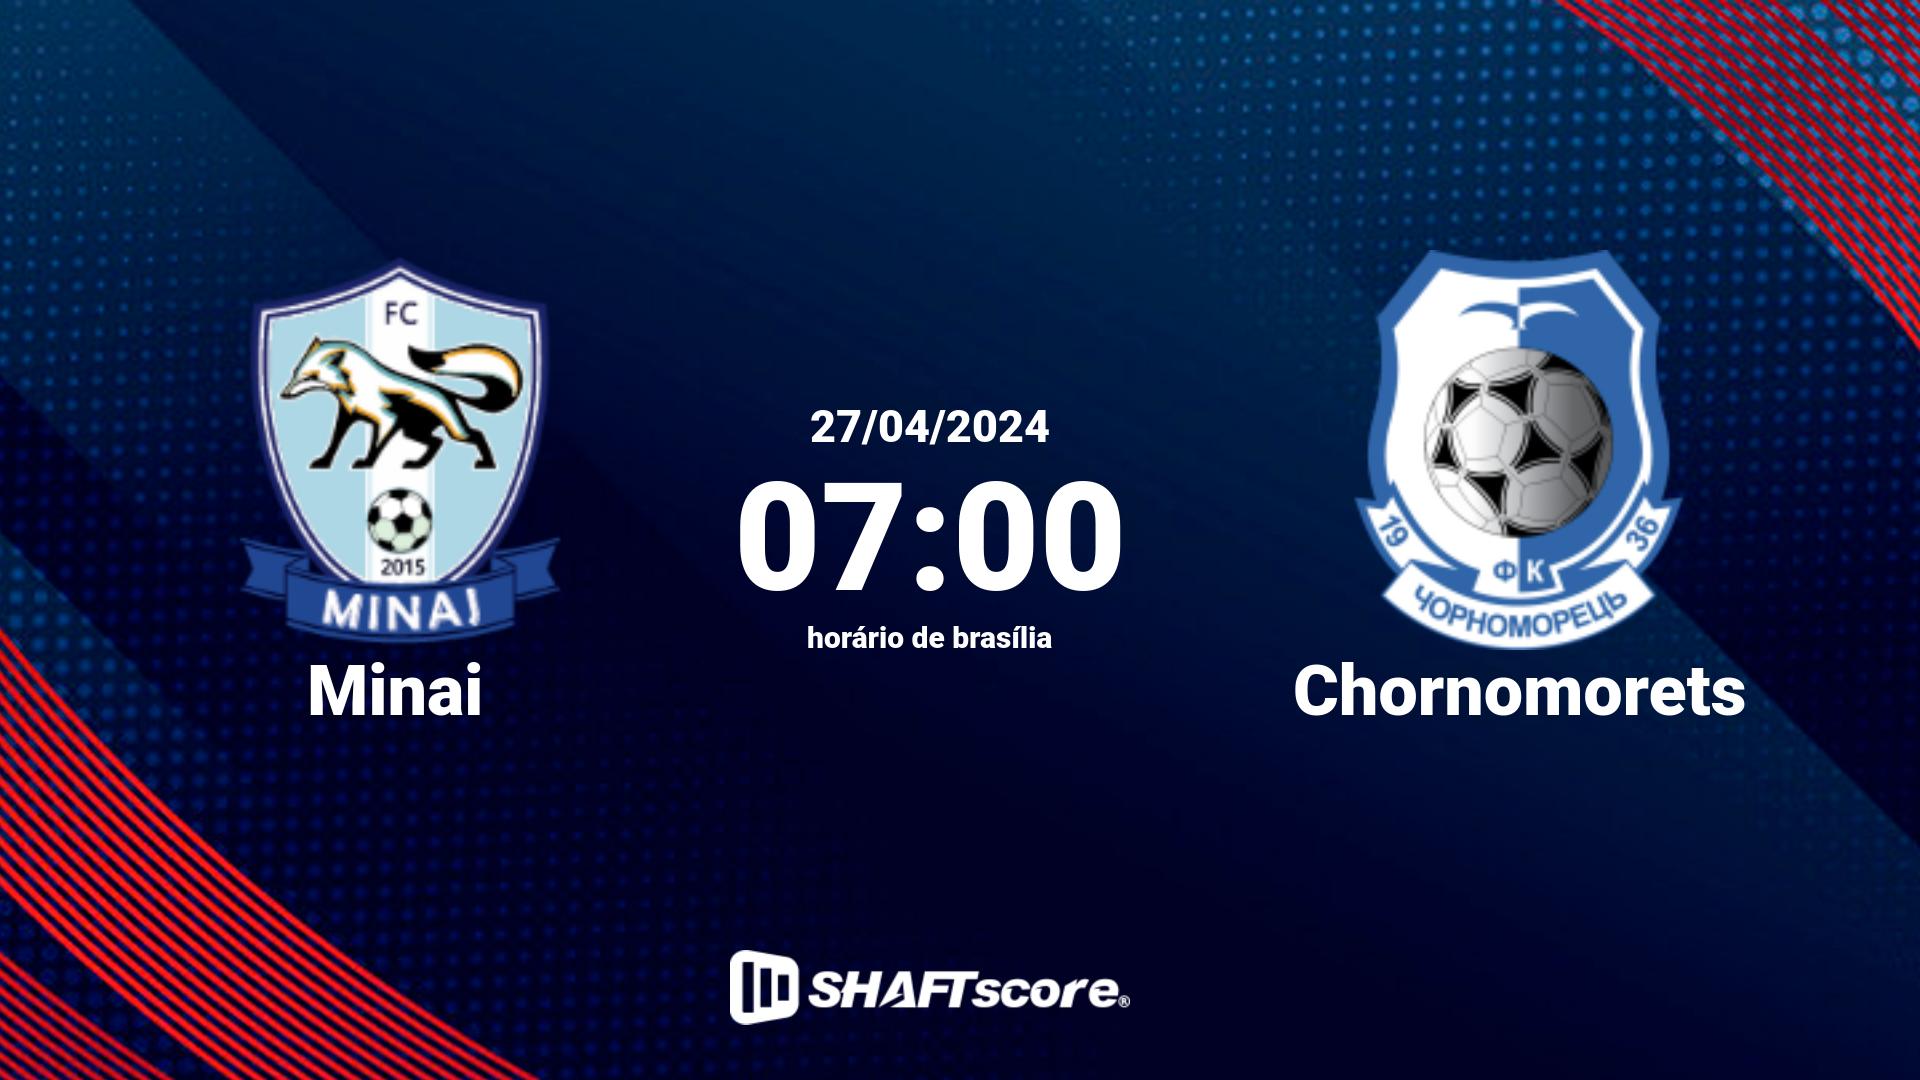 Estatísticas do jogo Minai vs Chornomorets 27.04 07:00